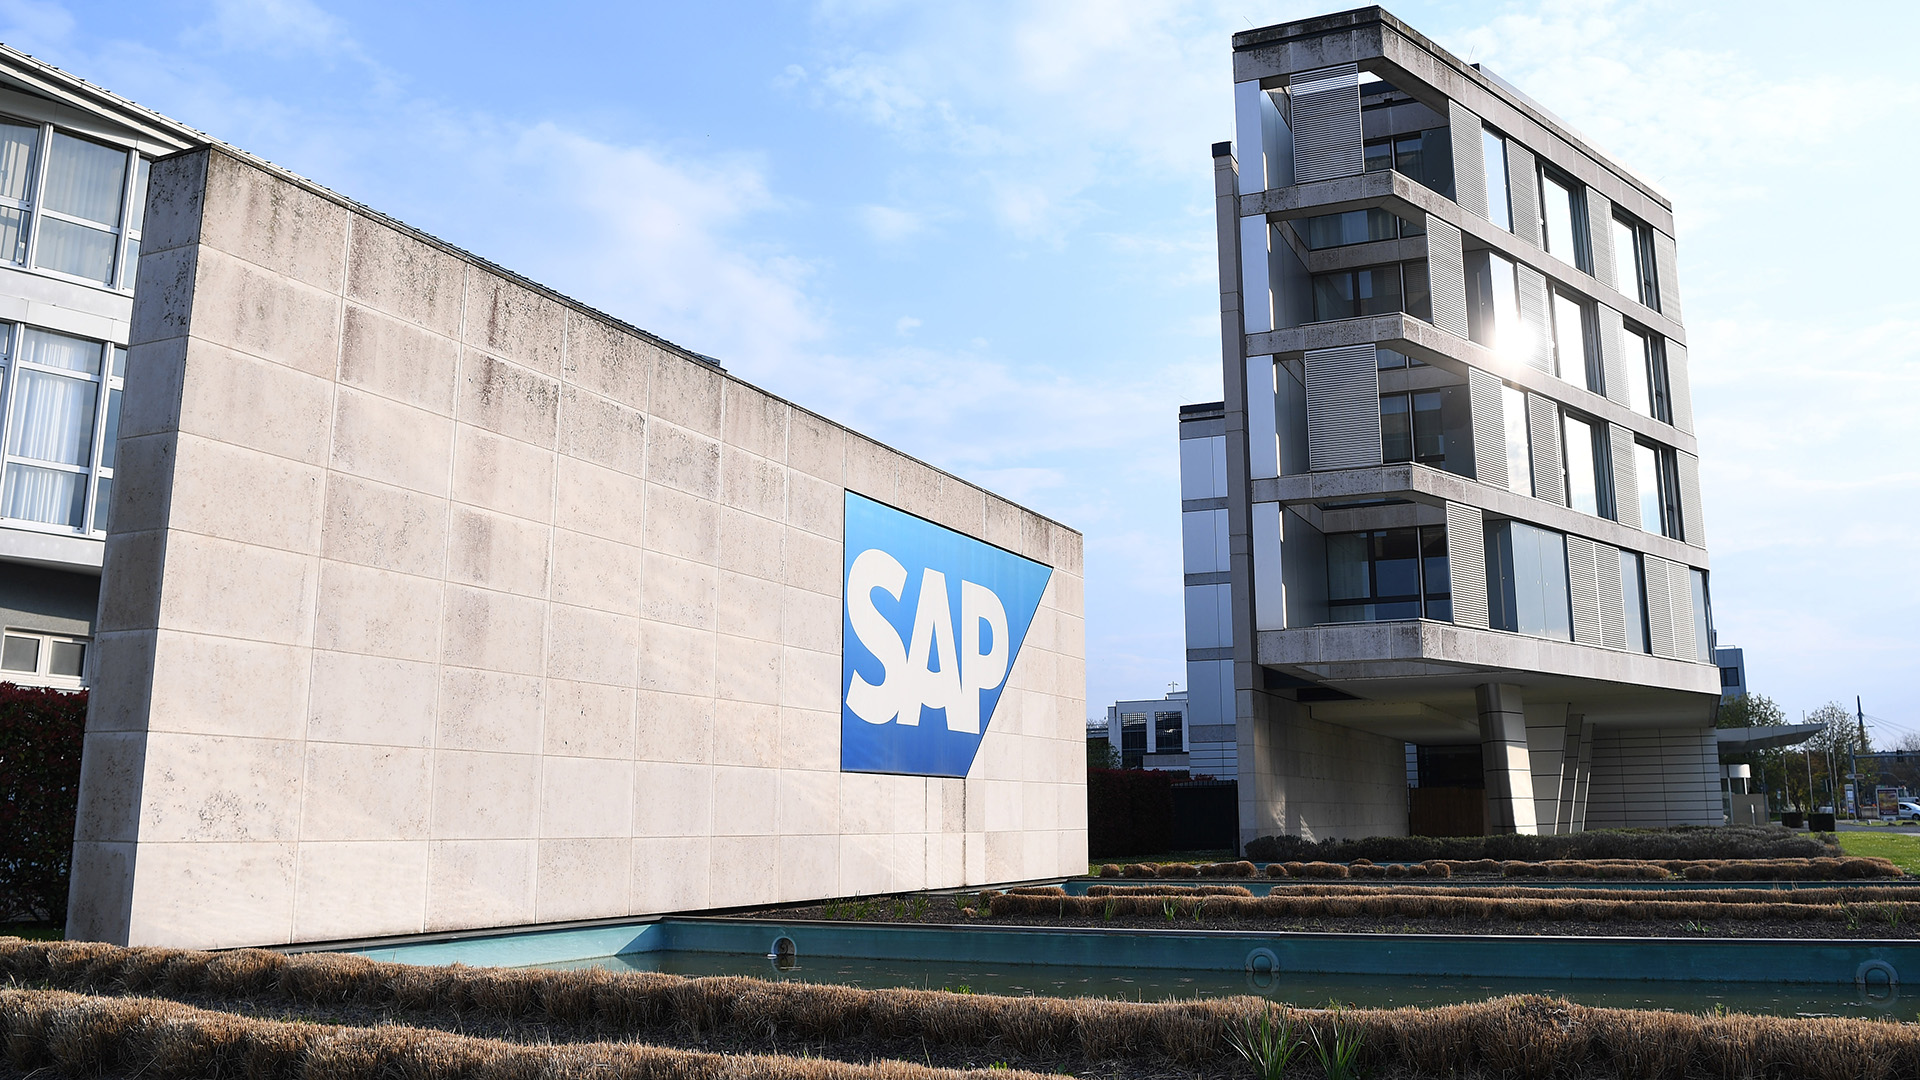 SAP Deutschland SE Zentrale in Walldorf | picture alliance/dpa/Revierfoto